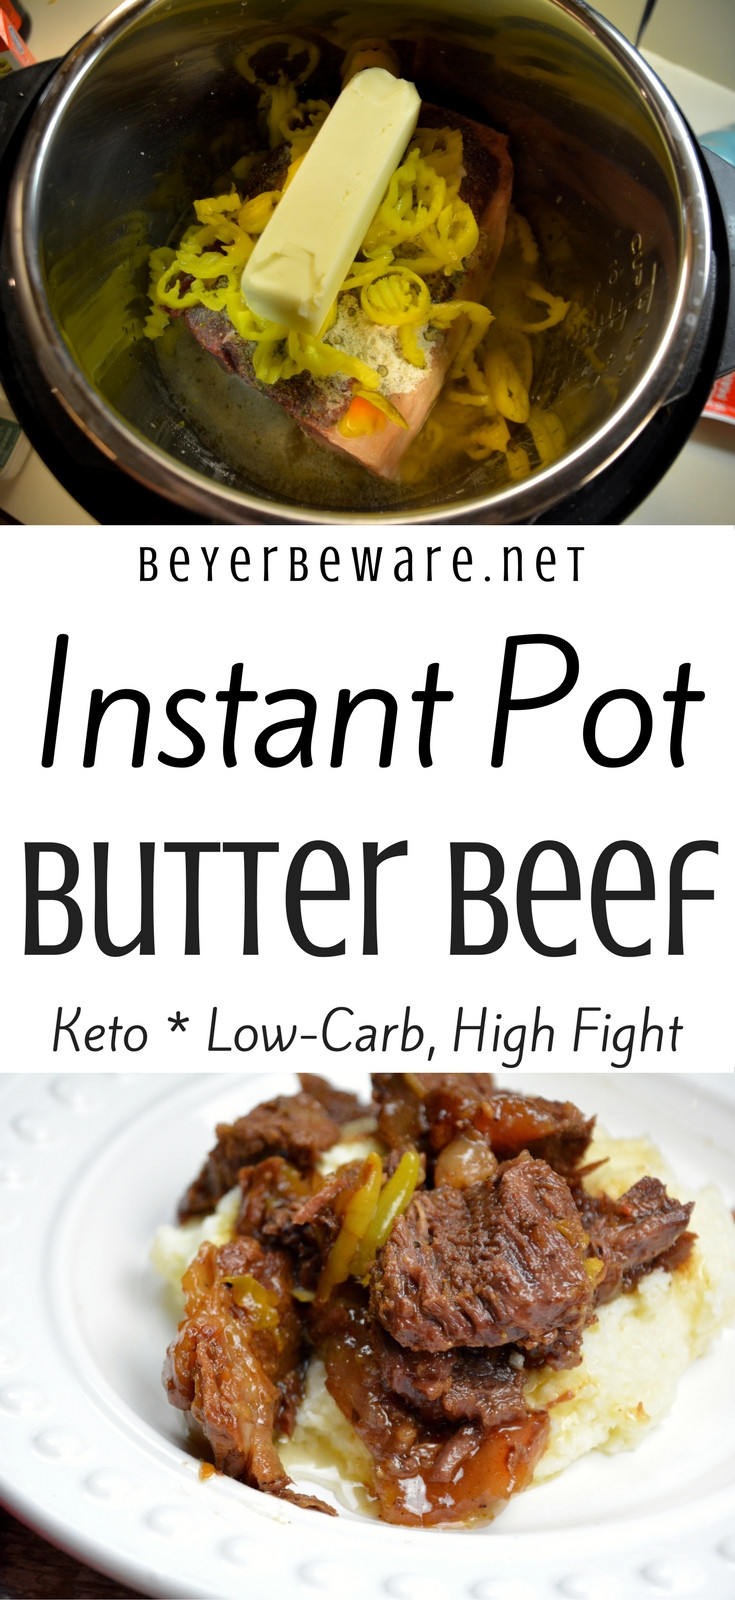 Instant Pot Keto Hamburger Recipes
 Instant Pot Butter Beef Keto Low Carb Recipe Beyer Beware